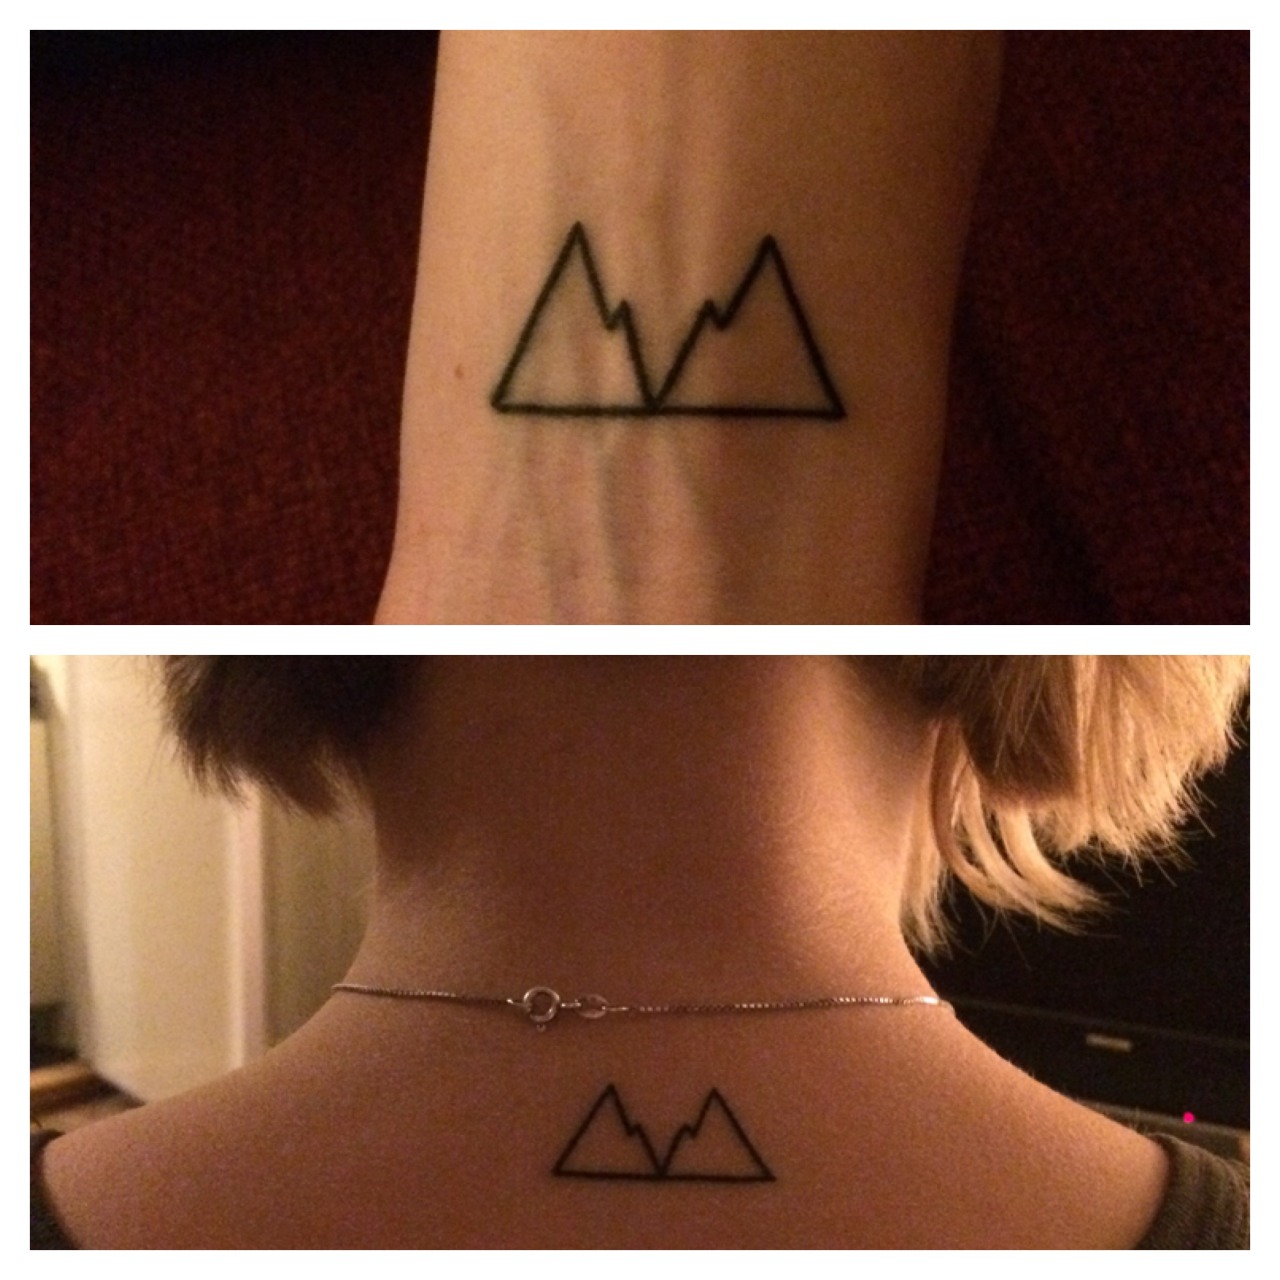 Twin peaks tattoo - Tattoogrid.net